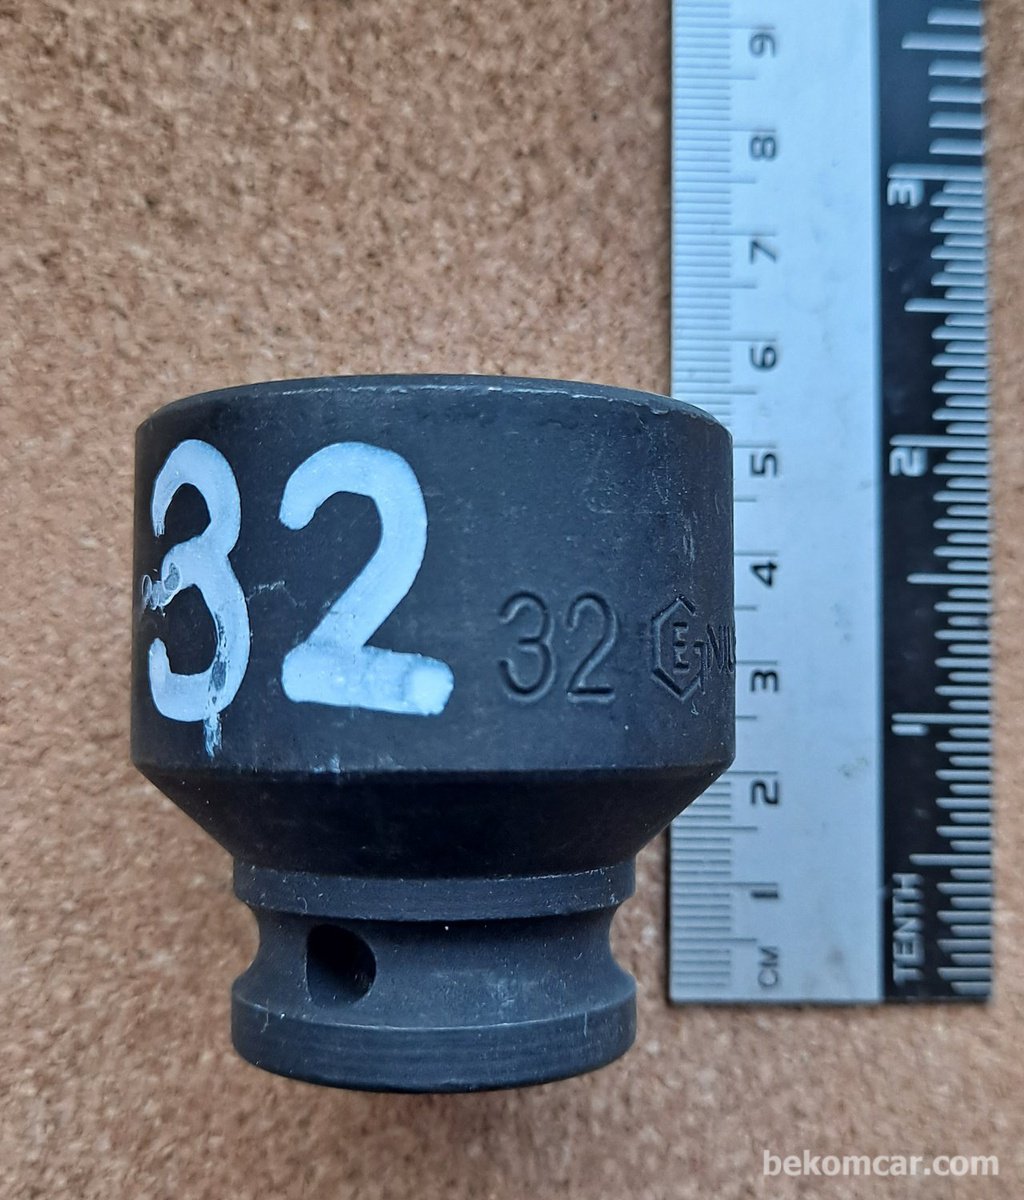 6각 32mm 임팩트용 1/2" 소켓|بيكومكار  (bekomcar)